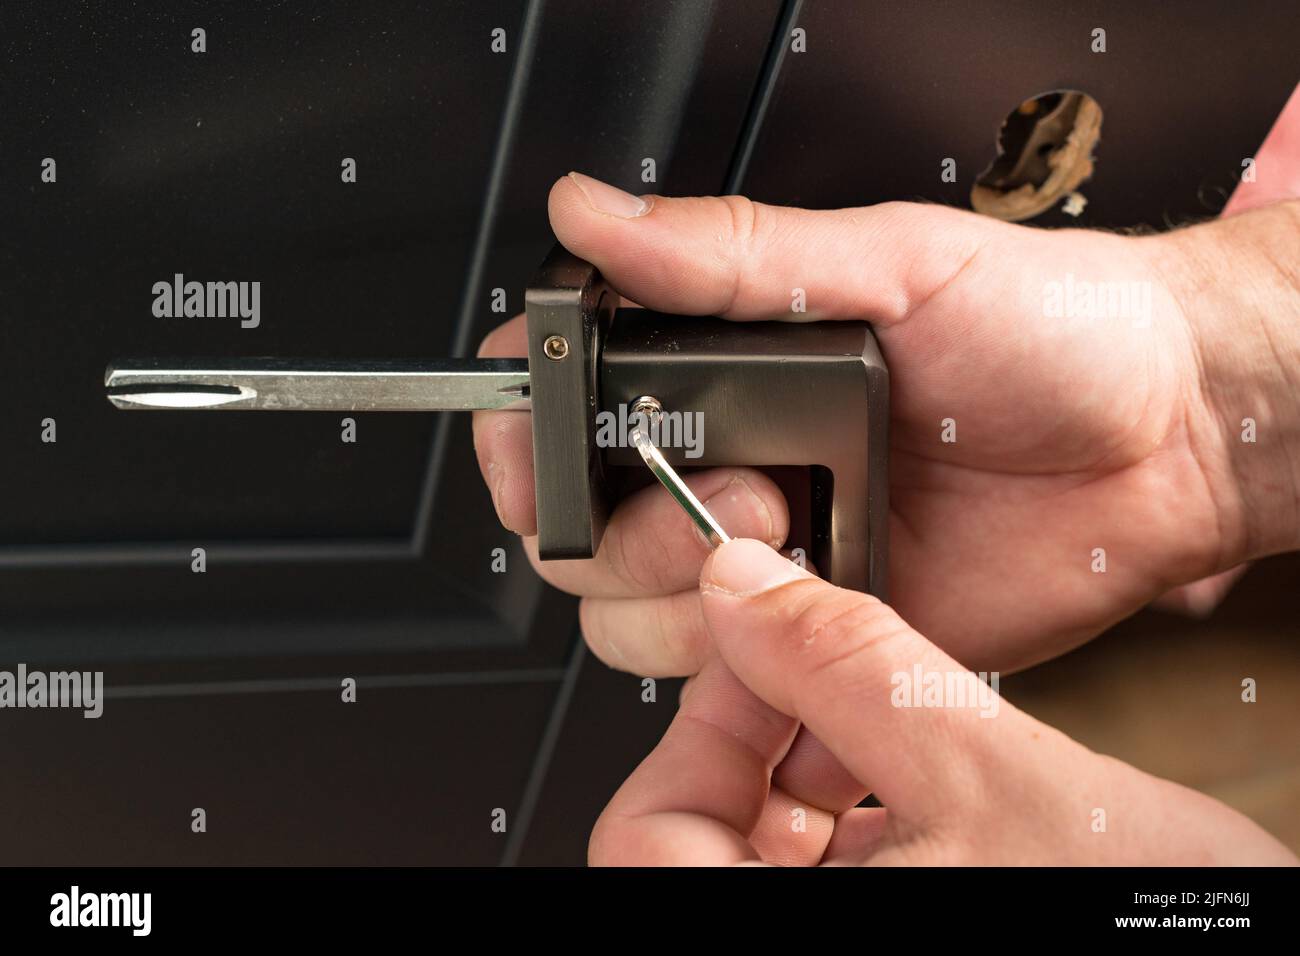 Manigmano che tiene una manopola della porta e una chiave esagonale,  montaggio della manopola della porta, pomello della porta in metallo Foto  stock - Alamy